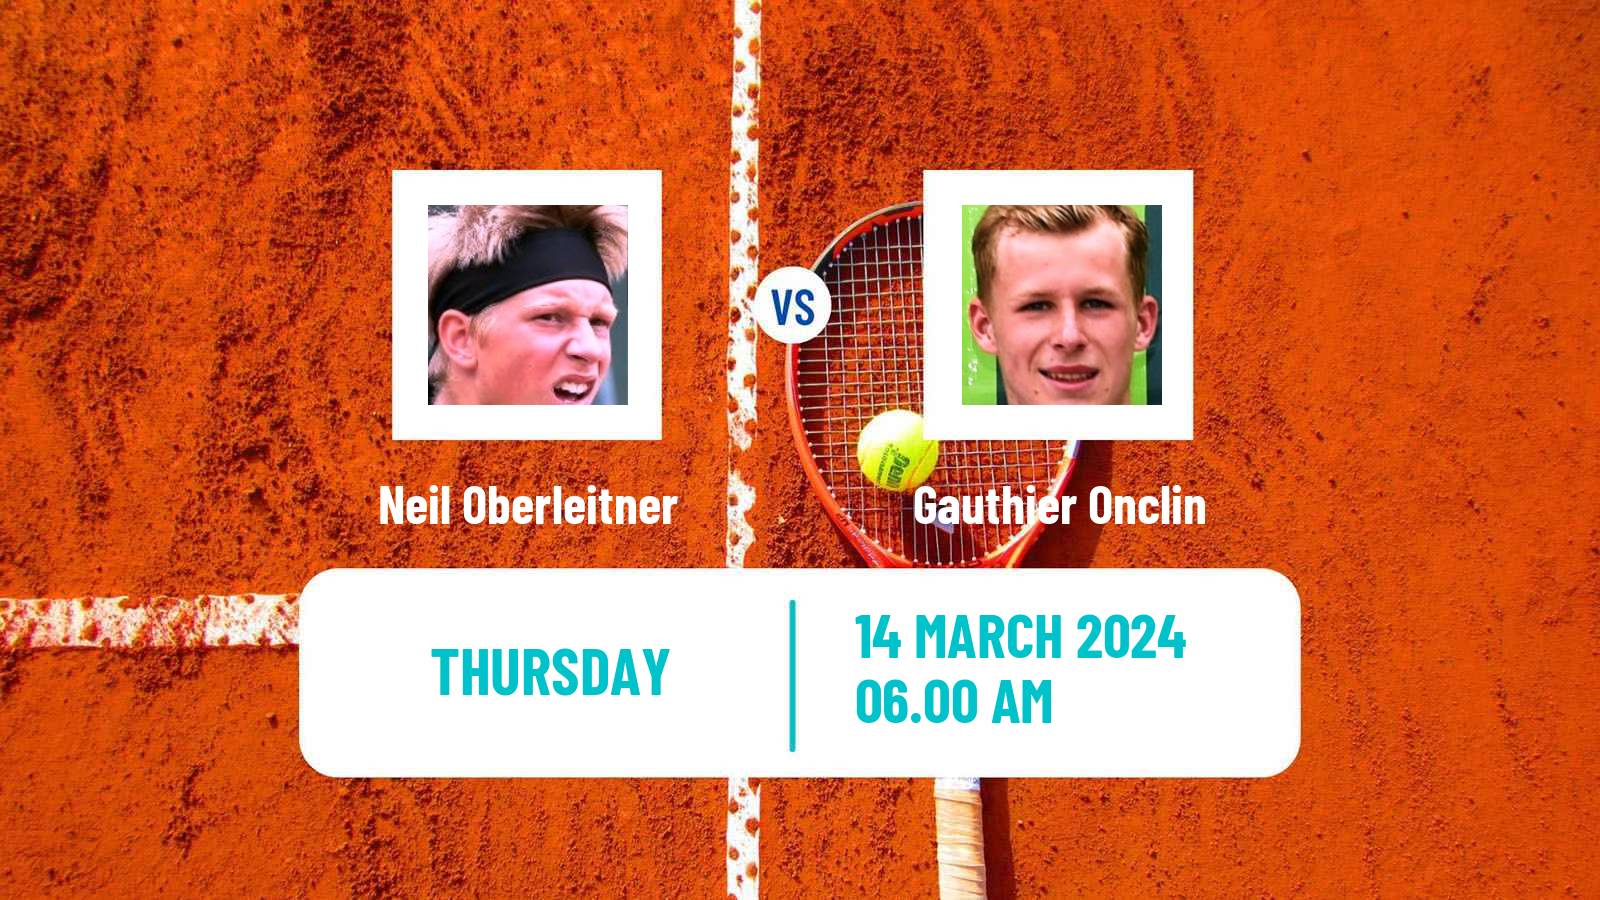 Tennis ITF M25 Creteil Men Neil Oberleitner - Gauthier Onclin